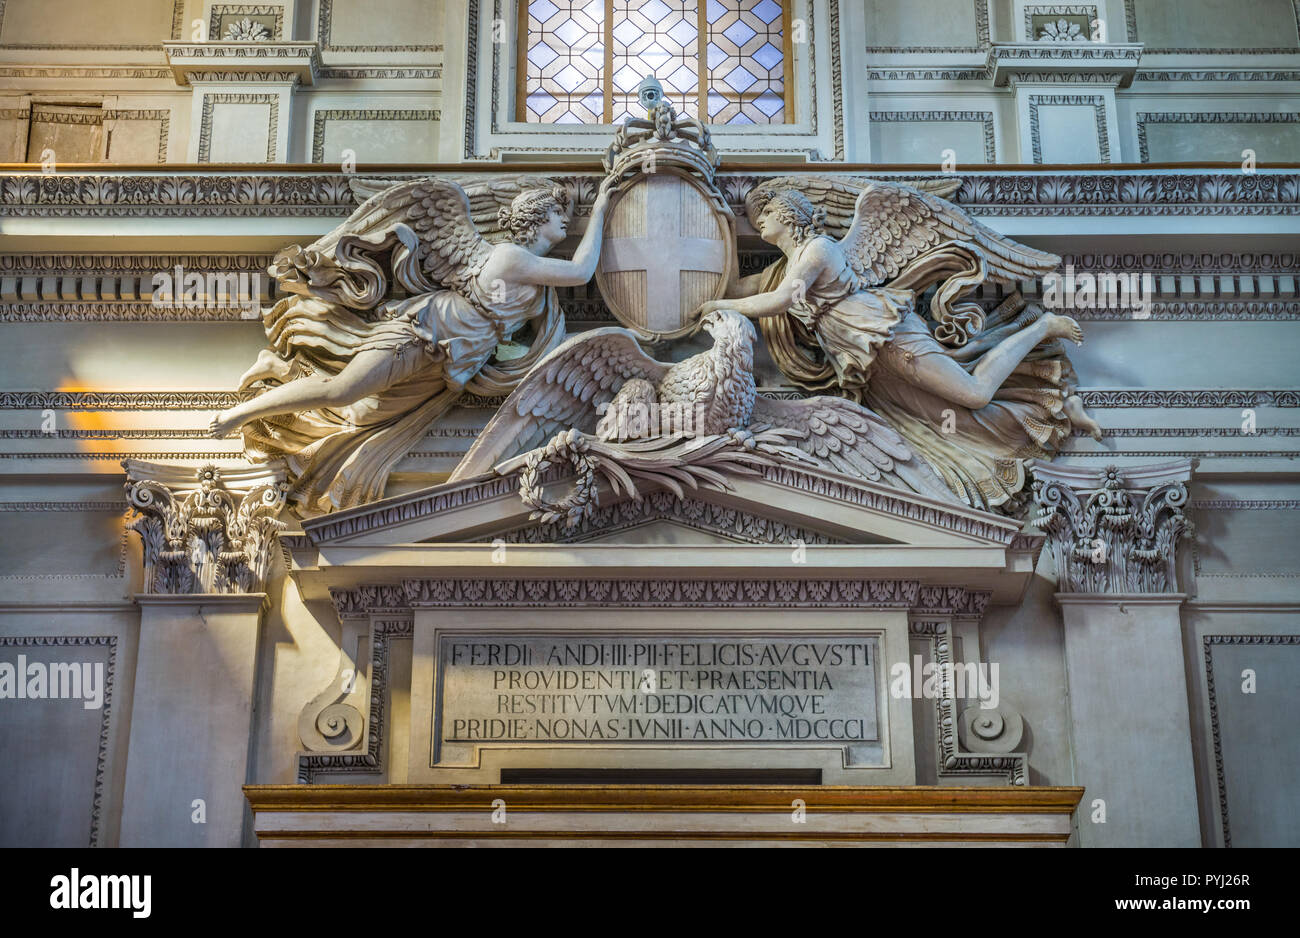 Counterfacade détails dans la cathédrale de Palerme. La Sicile, le sud de l'Italie. Banque D'Images